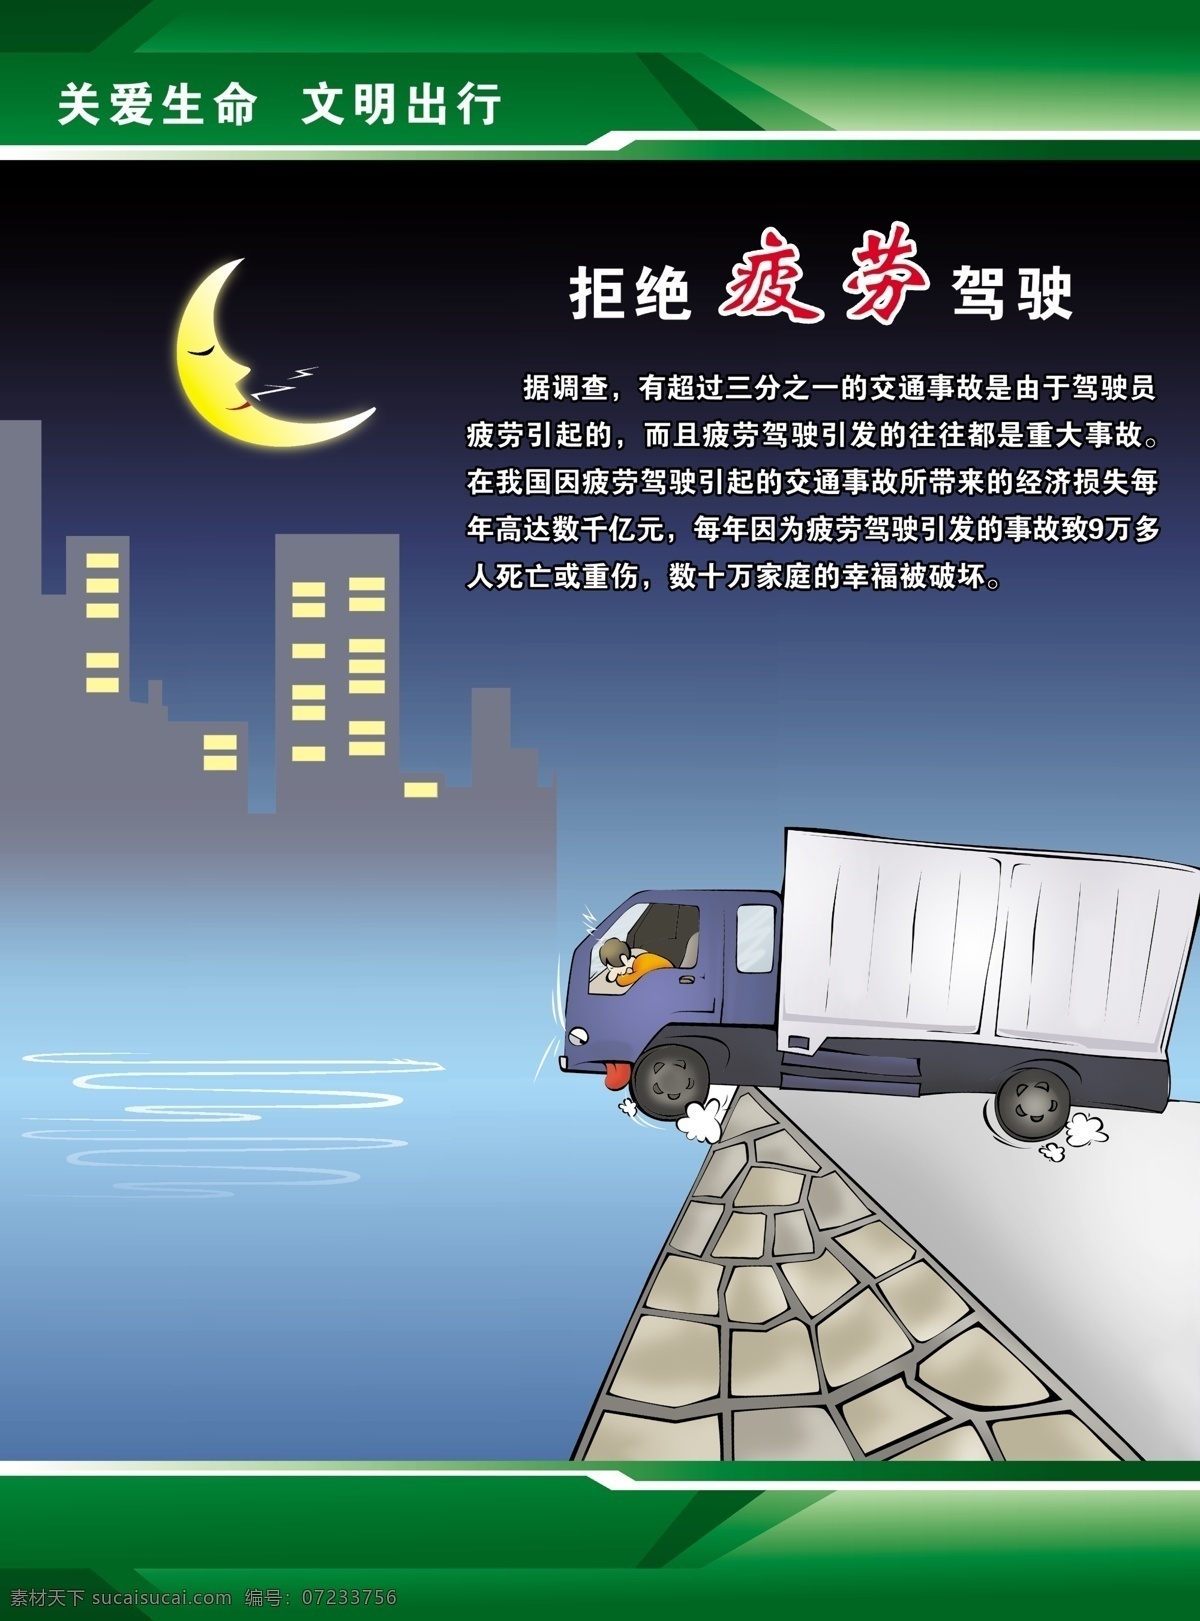 文明 驾驶 宣传 广告 中文字 人物 货车 月亮 房屋 建筑物 绿色边框 蓝色渐变背景